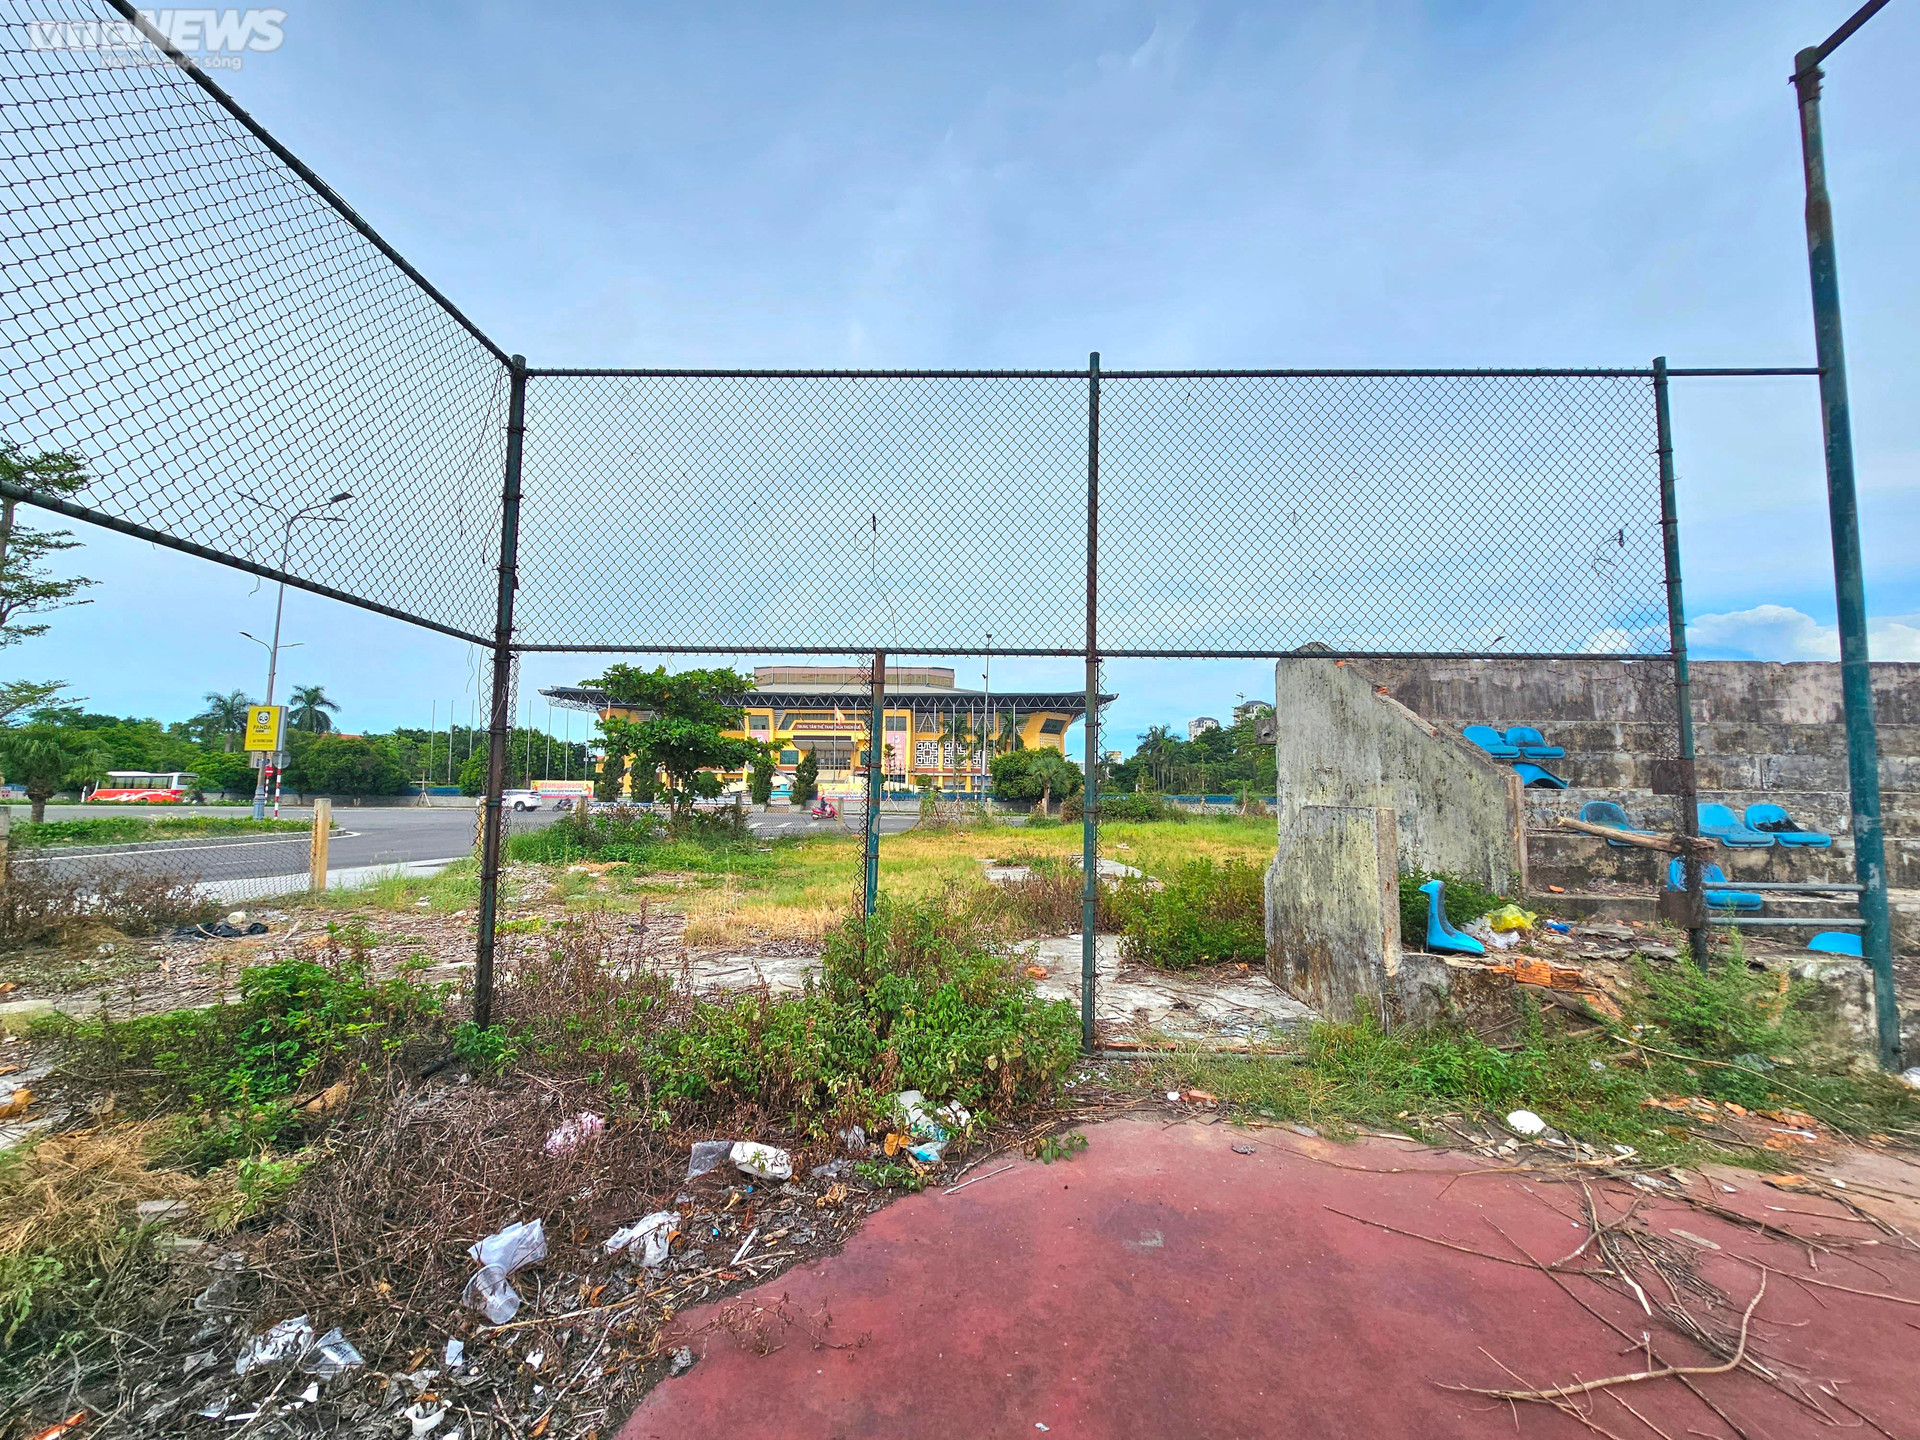 Khu đất nằm trên đường Hà Huy Tập (TP. Huế) đối diện Trung tâm thể thao Thừa Thiên - Huế, gần UBND TP Huế, là khu vực đang phát triển bậc nhất ở cố đô Huế nhưng lại bị bỏ hoang suốt nhiều năm qua.